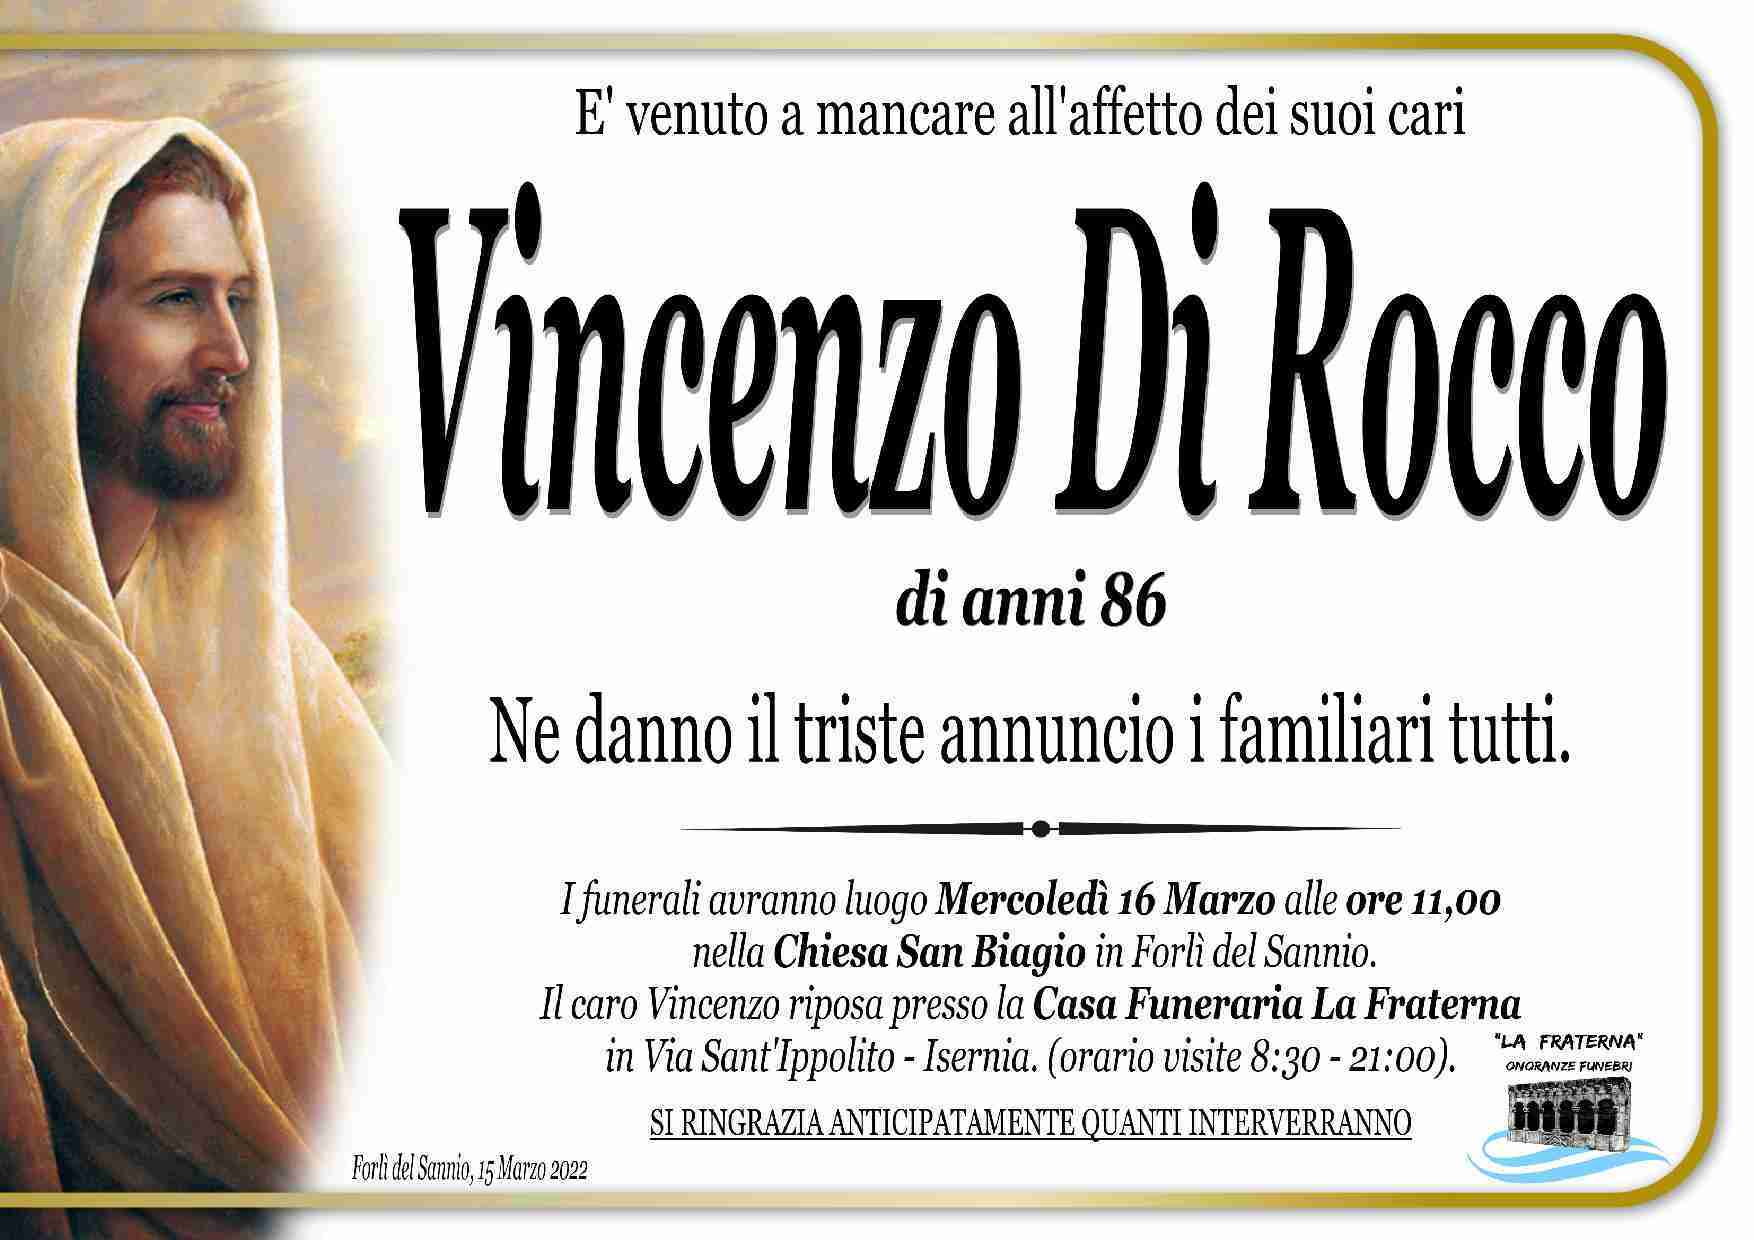 Vincenzo Di Rocco